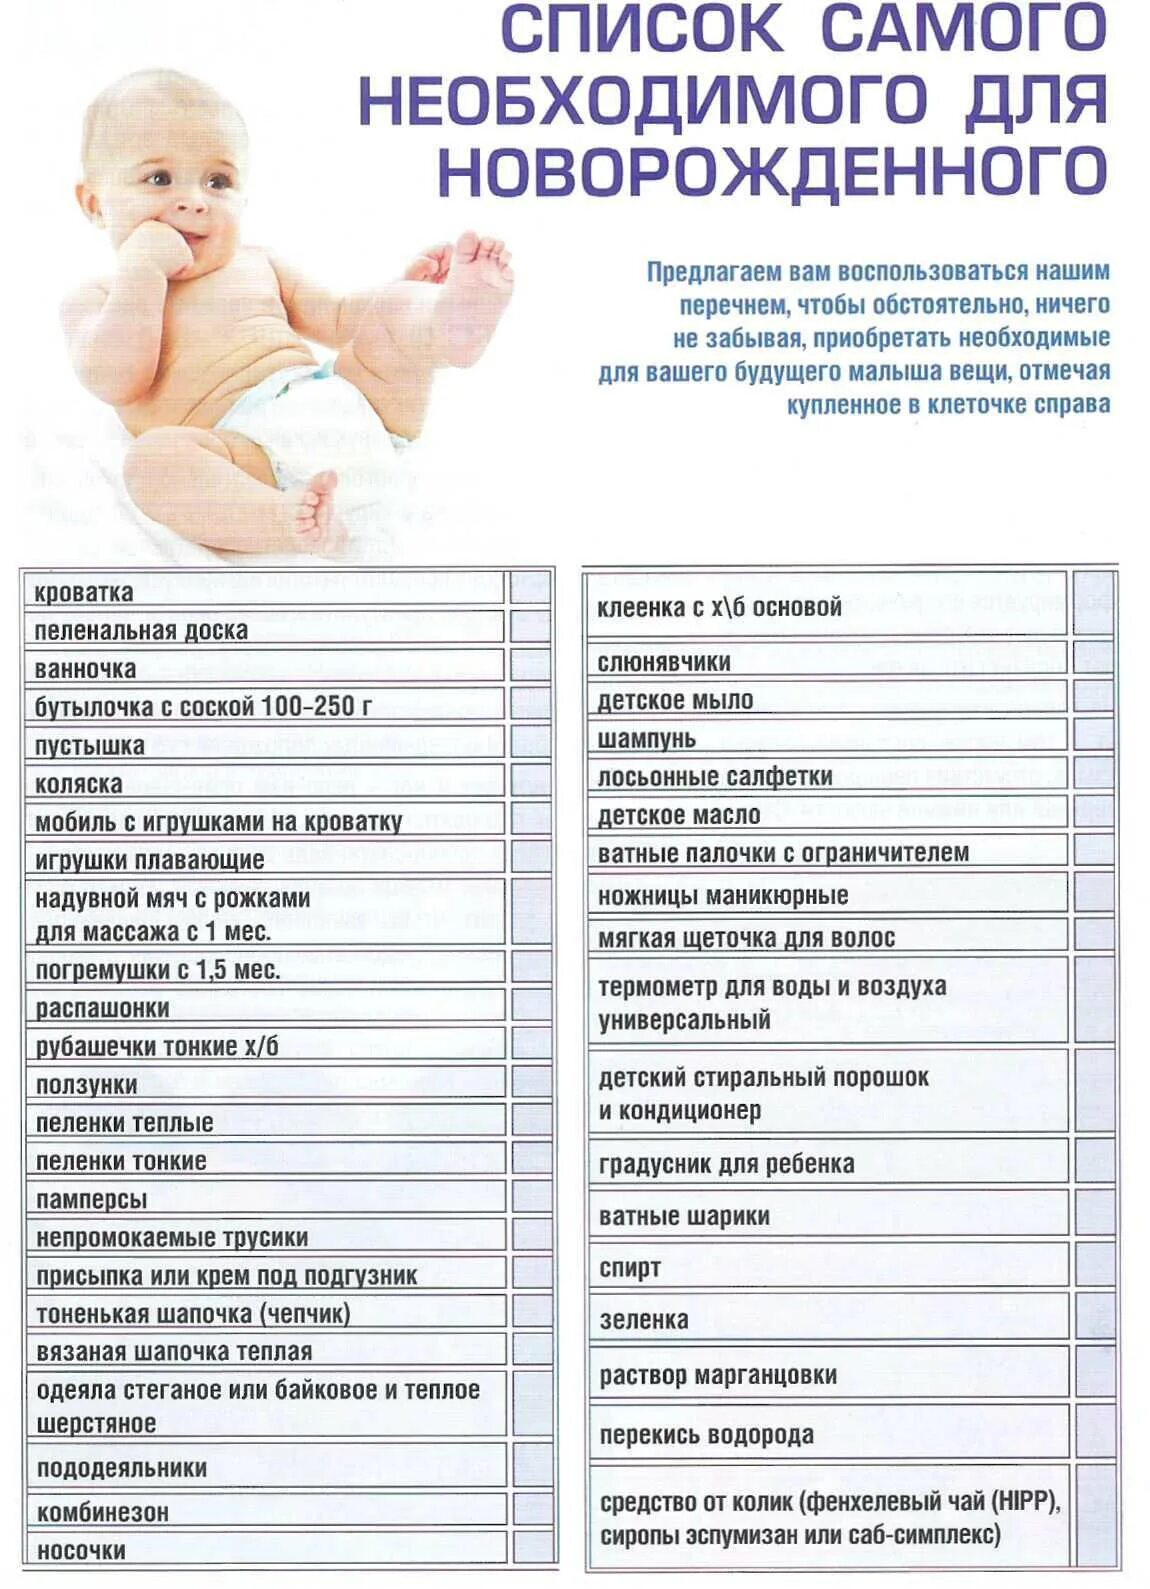 Список что нужно ребенку в первый месяц жизни новорожденного. Список вещей которые нужны новорожденному. Что нужно для новорожденного ребенка на первое время летом список. Список необходимых вещей для новорождённых. Можно покупать новорожденному заранее